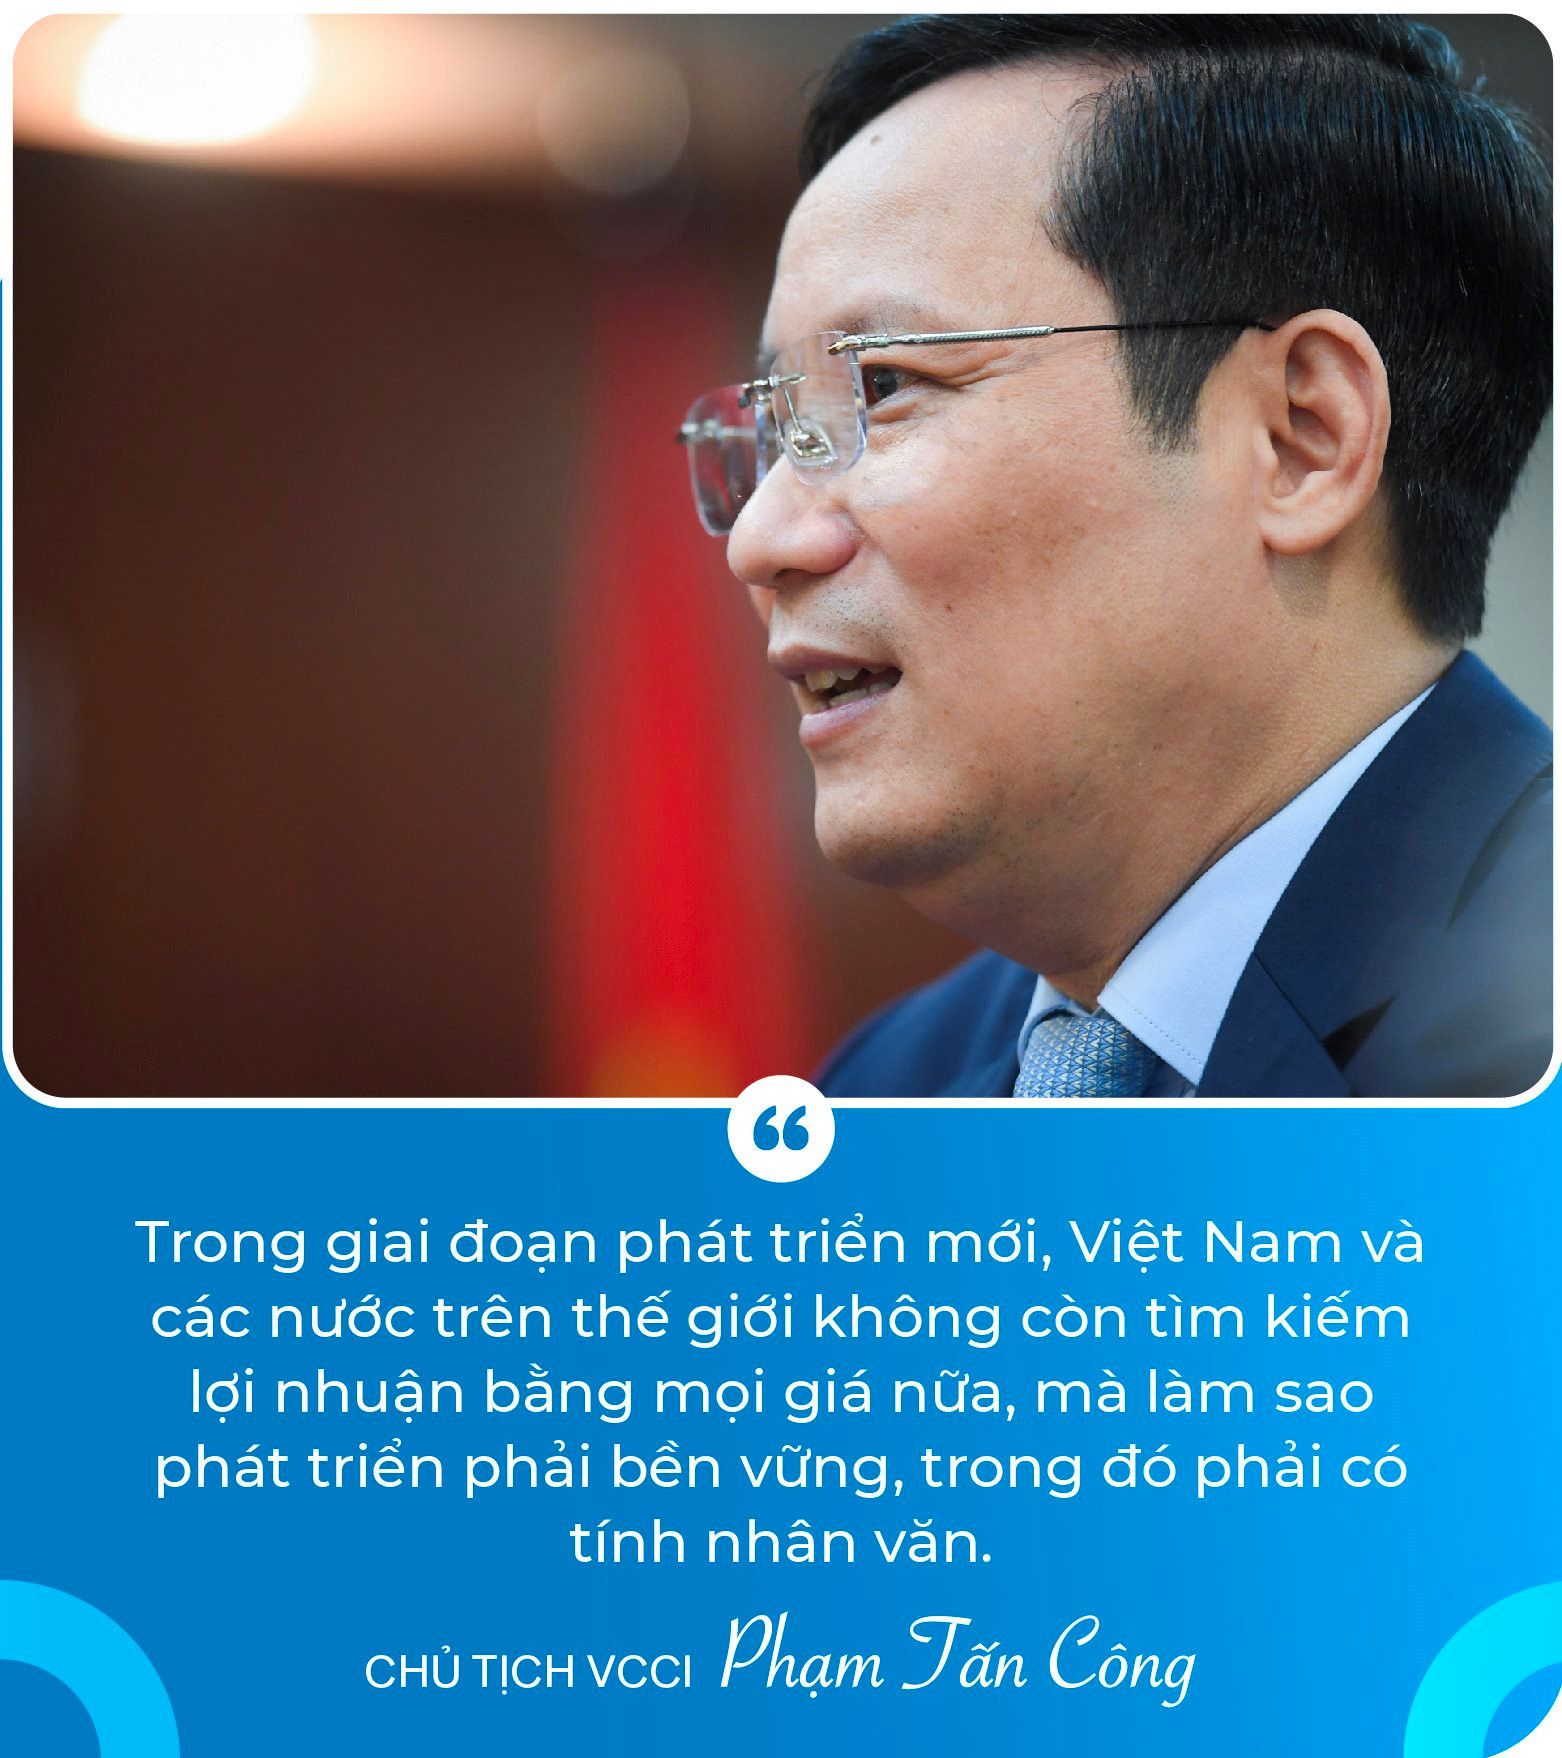 Chủ tịch VCCI Phạm Tấn Công: Không có đạo đức doanh nhân và văn hóa kinh doanh, doanh nghiệp sẽ sụp đổ thôi! - Ảnh 2.